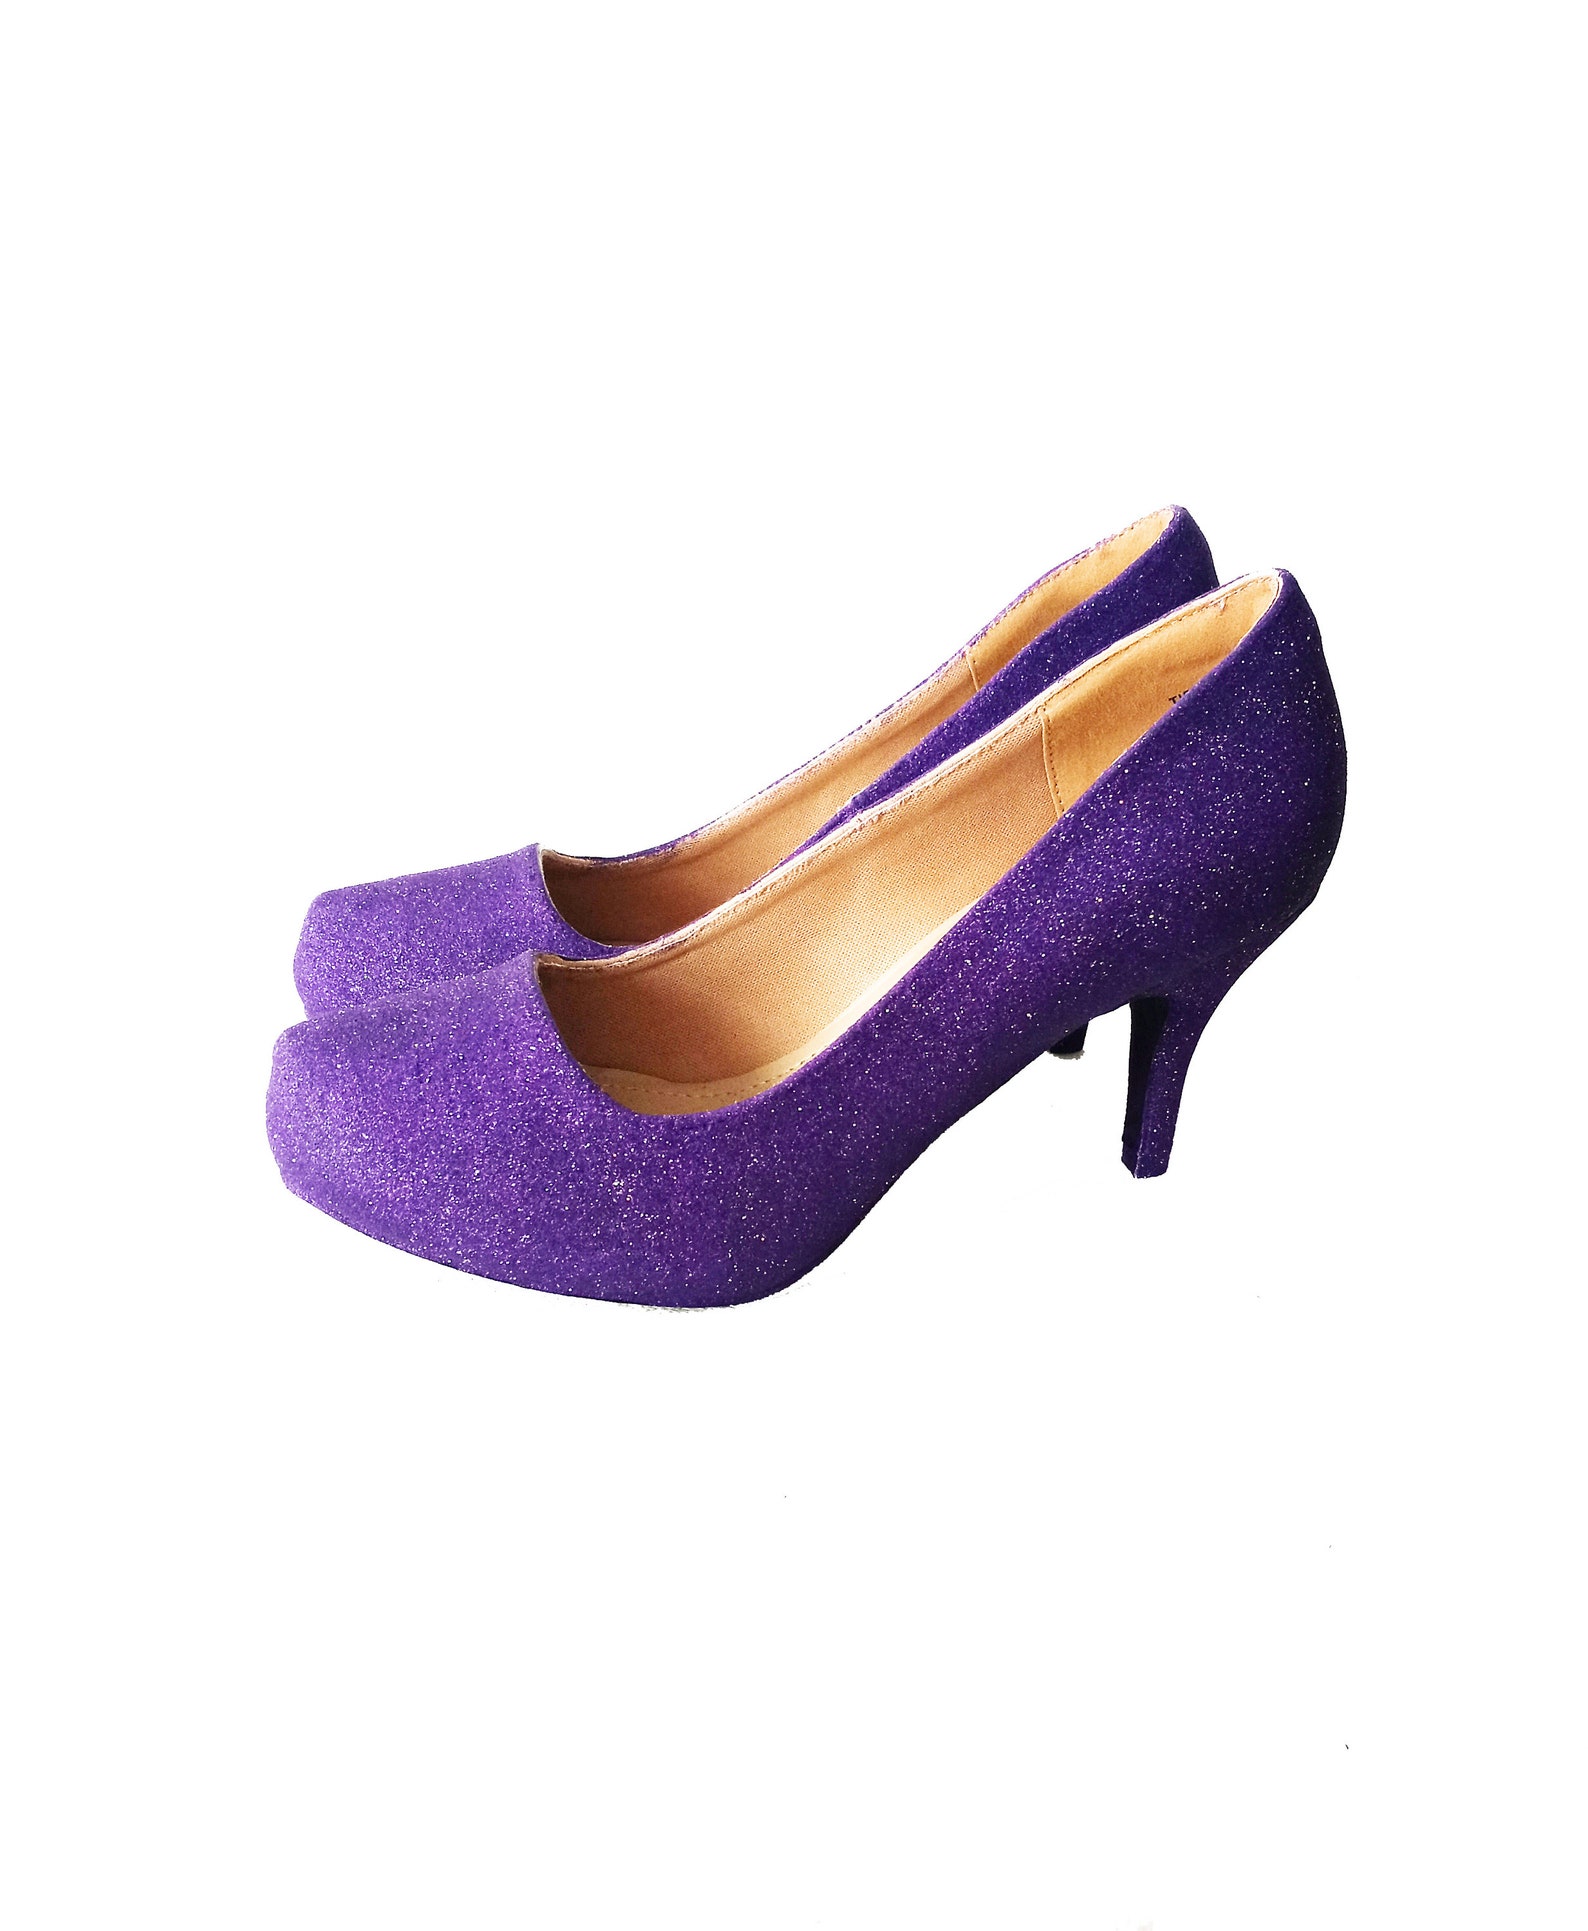 Glitter Heels / Purple Glitter Heels / Wedding Shoes / Sparkle | Etsy